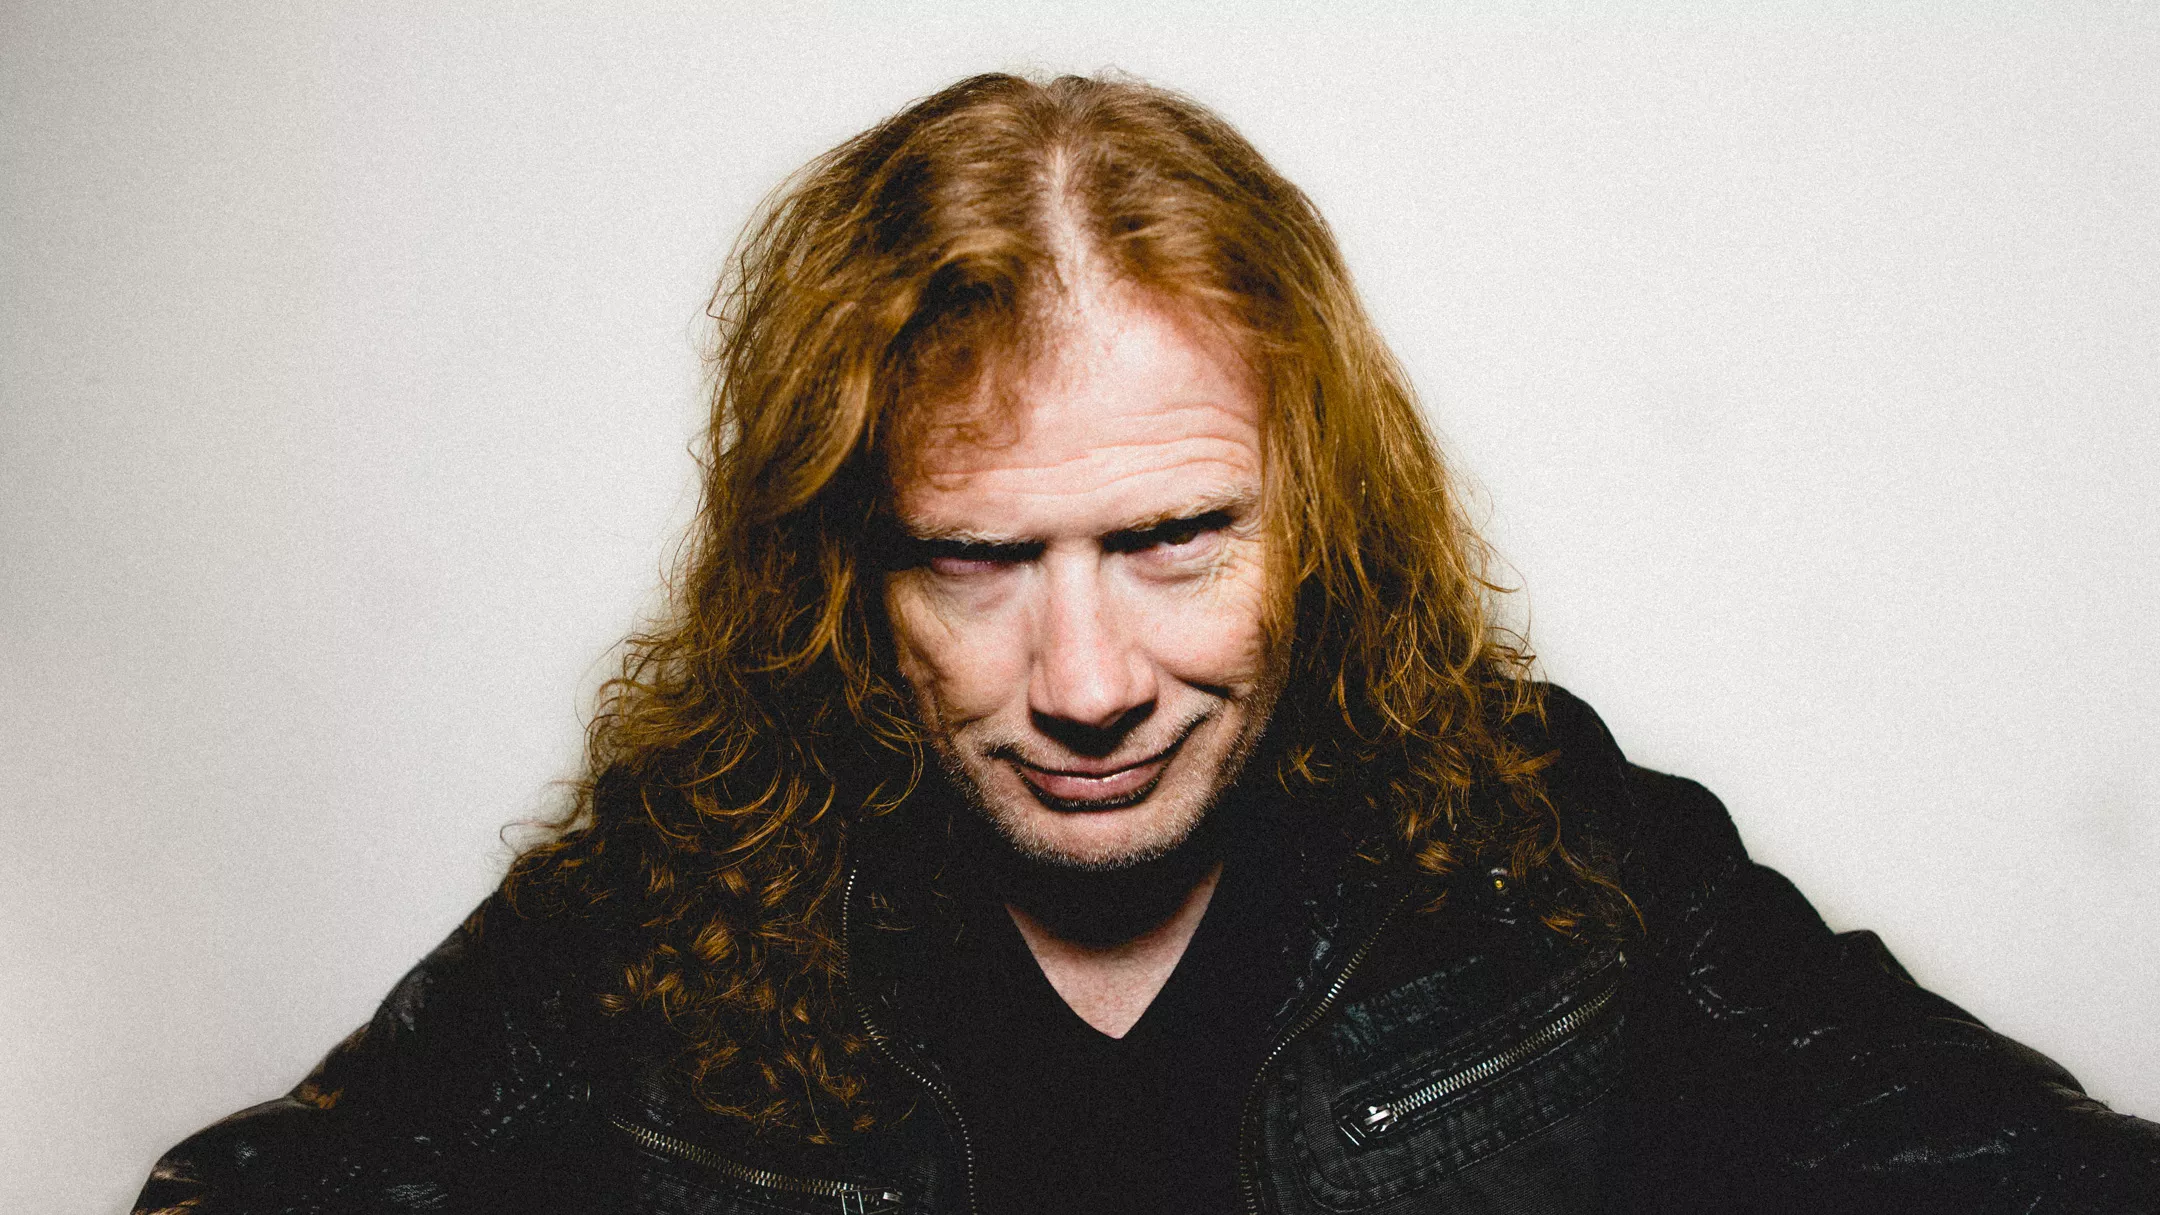 Dave Mustaine: "Jag har fått strupcancer"